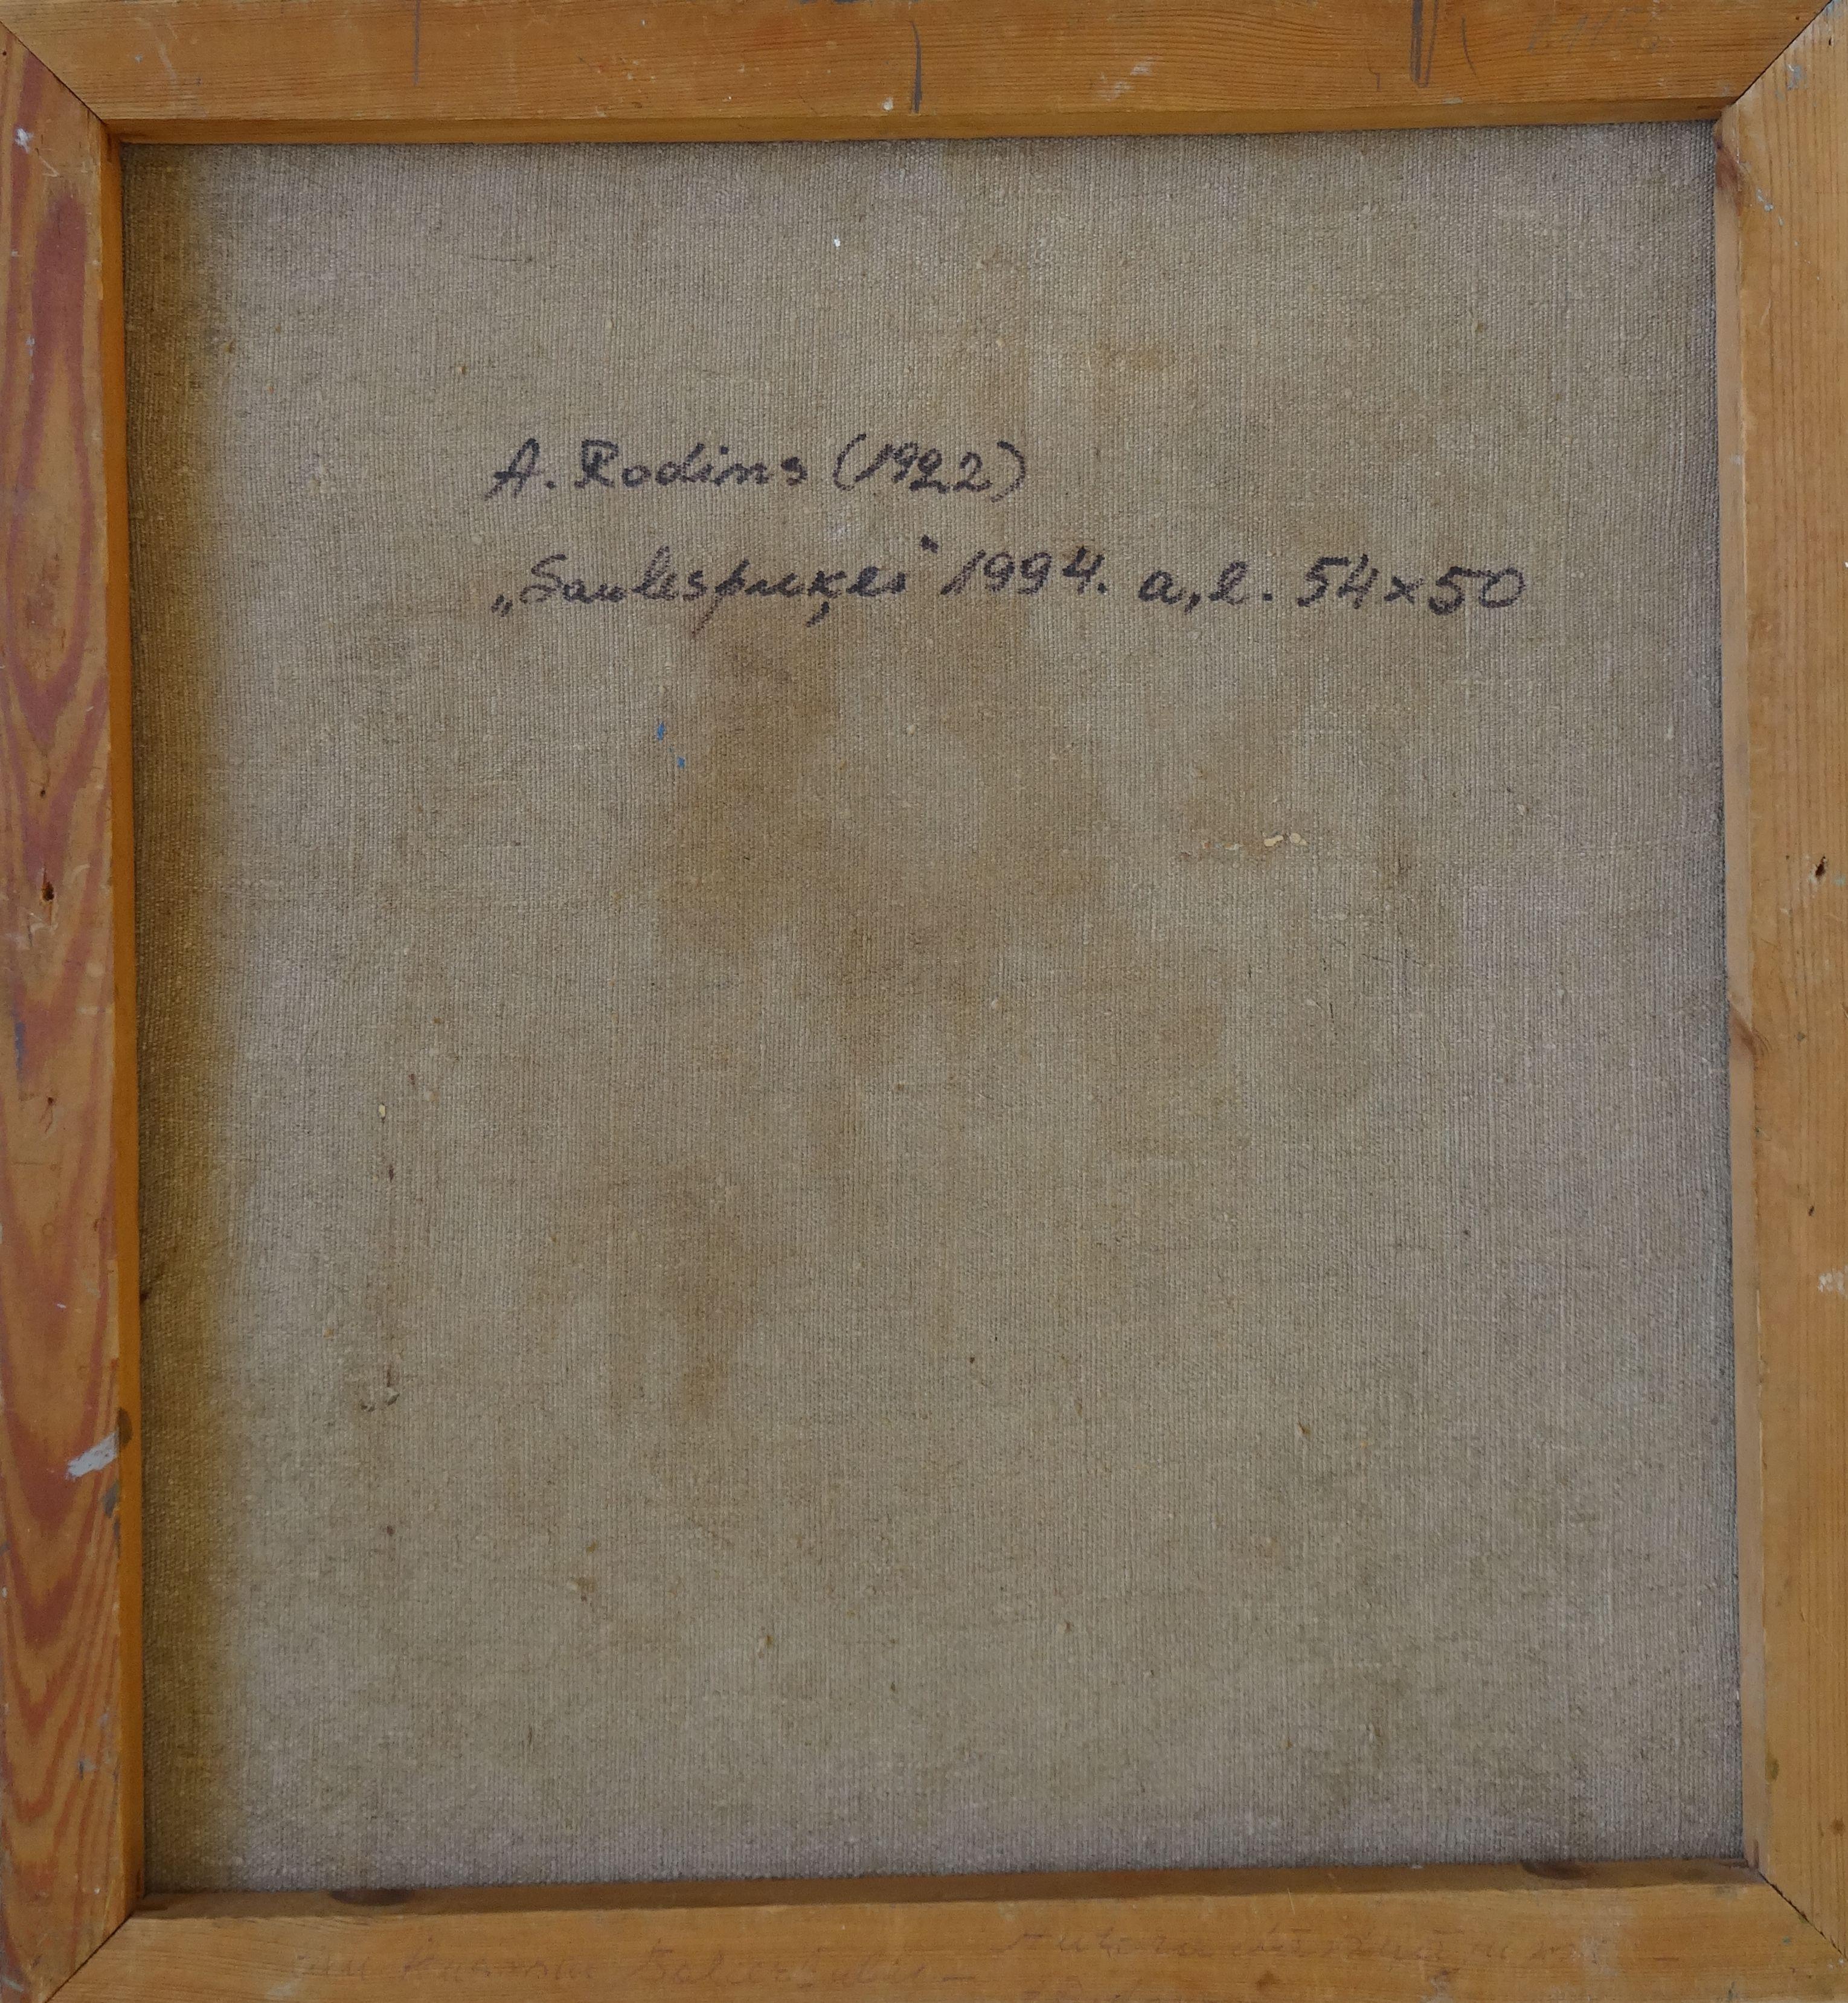 Tournesols. 1994, huile sur toile, 54x50 cm
Nature morte avec tournesols 

Aleksandr Rodin (1922-2001)
Peintre Né dans une famille d'agriculteurs. Épouse Rasma Lace - spécialiste des arts. A étudié à l'école d'art de Stalingrad, à l'école d'art de